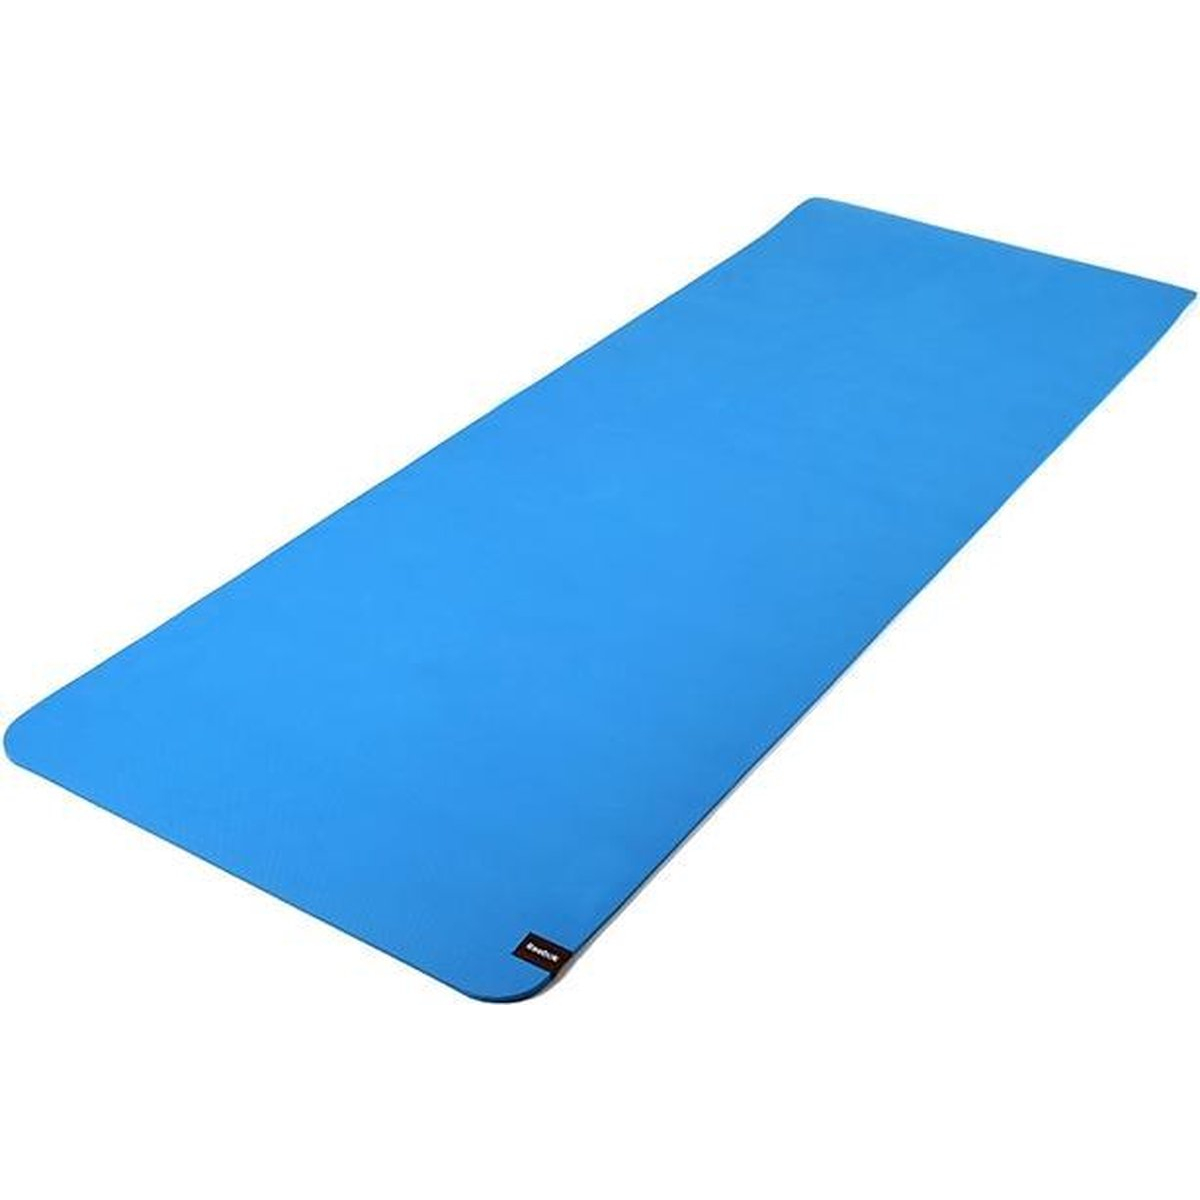 Yoga mat dubbelzijdig Reebok 6mm blauw/groen